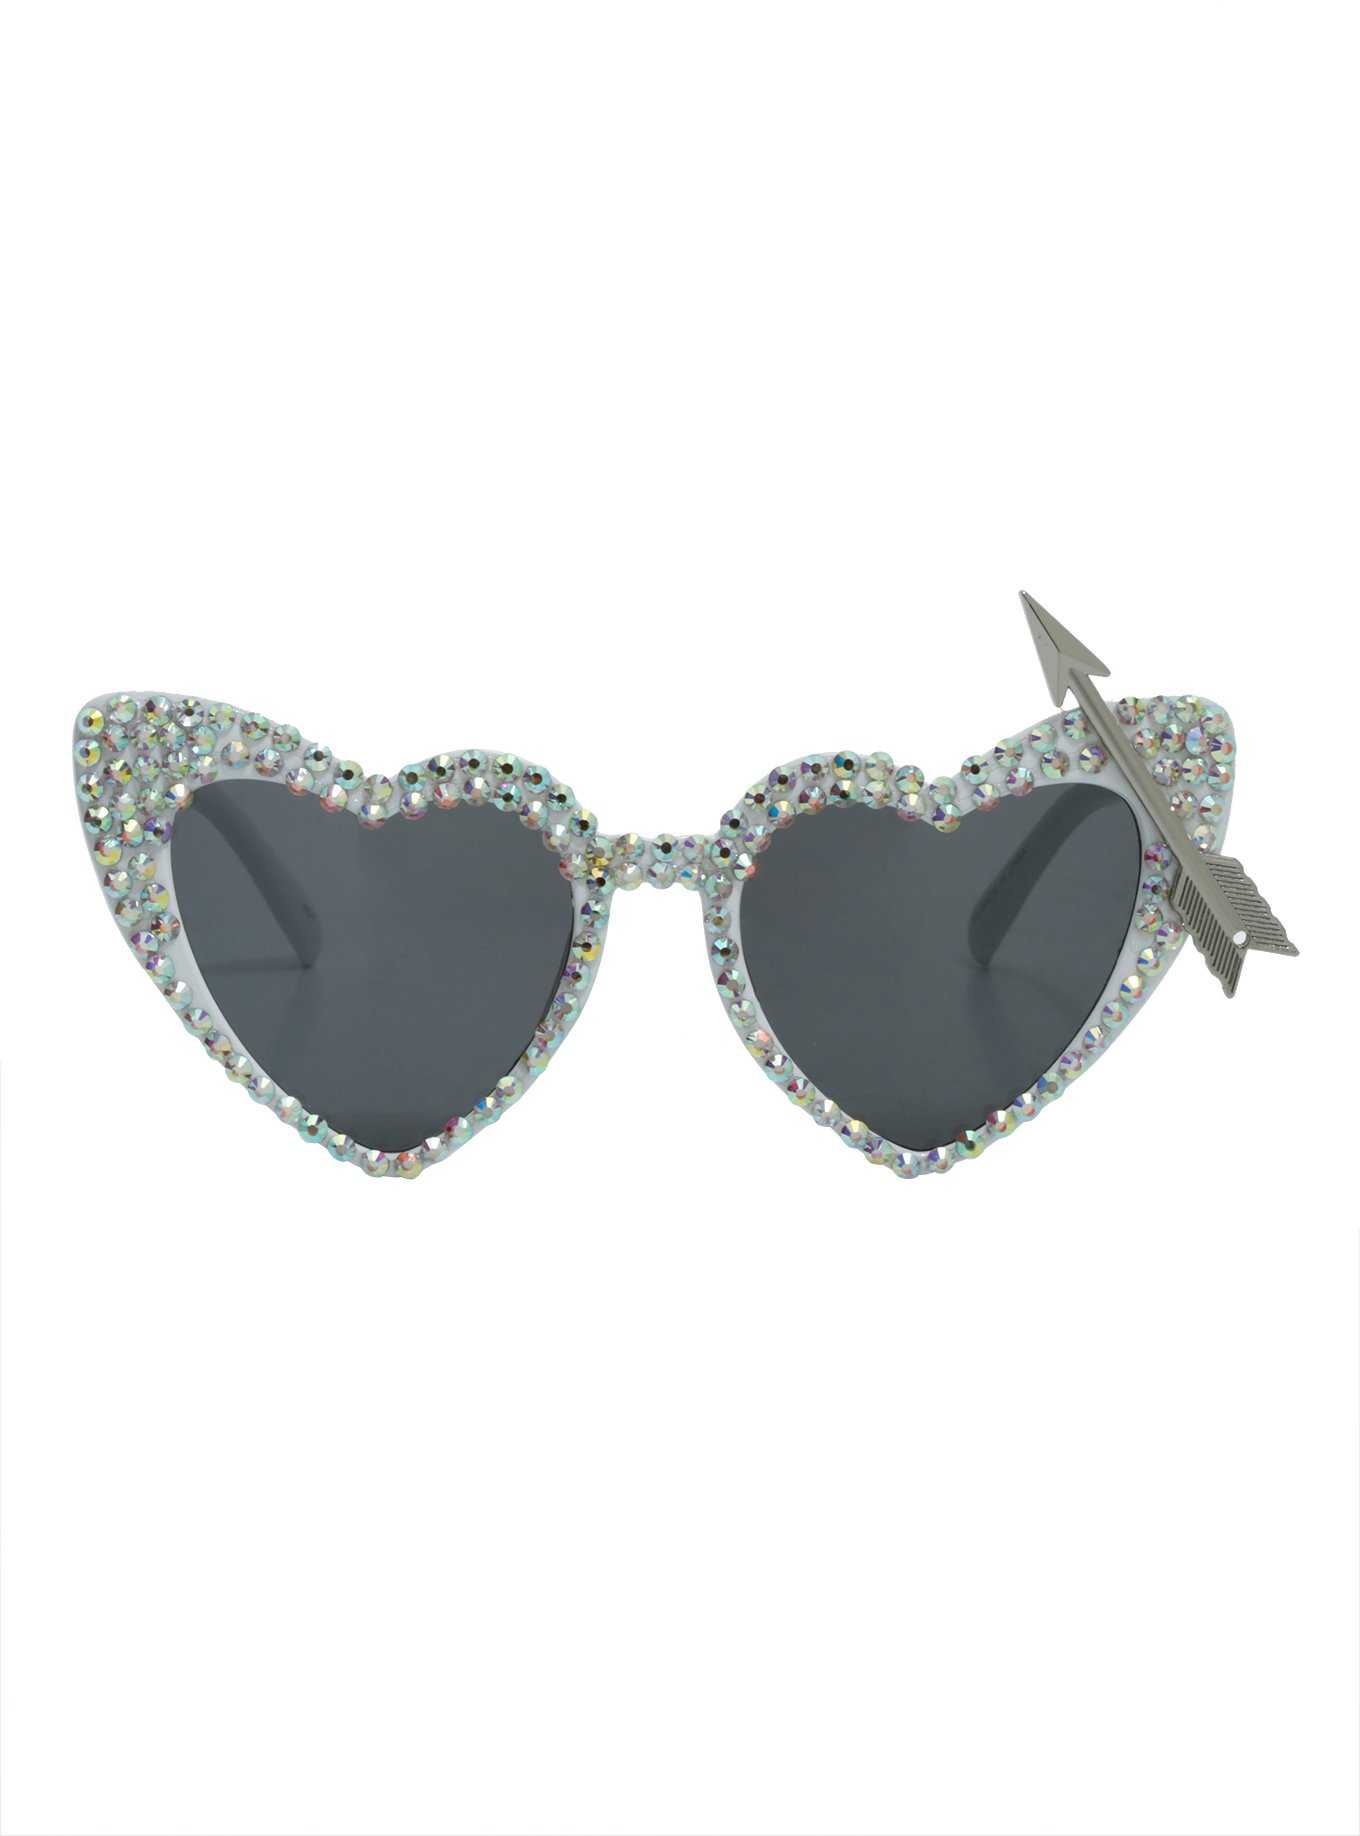 White Bling Arrow Heart Sunglasses, , hi-res